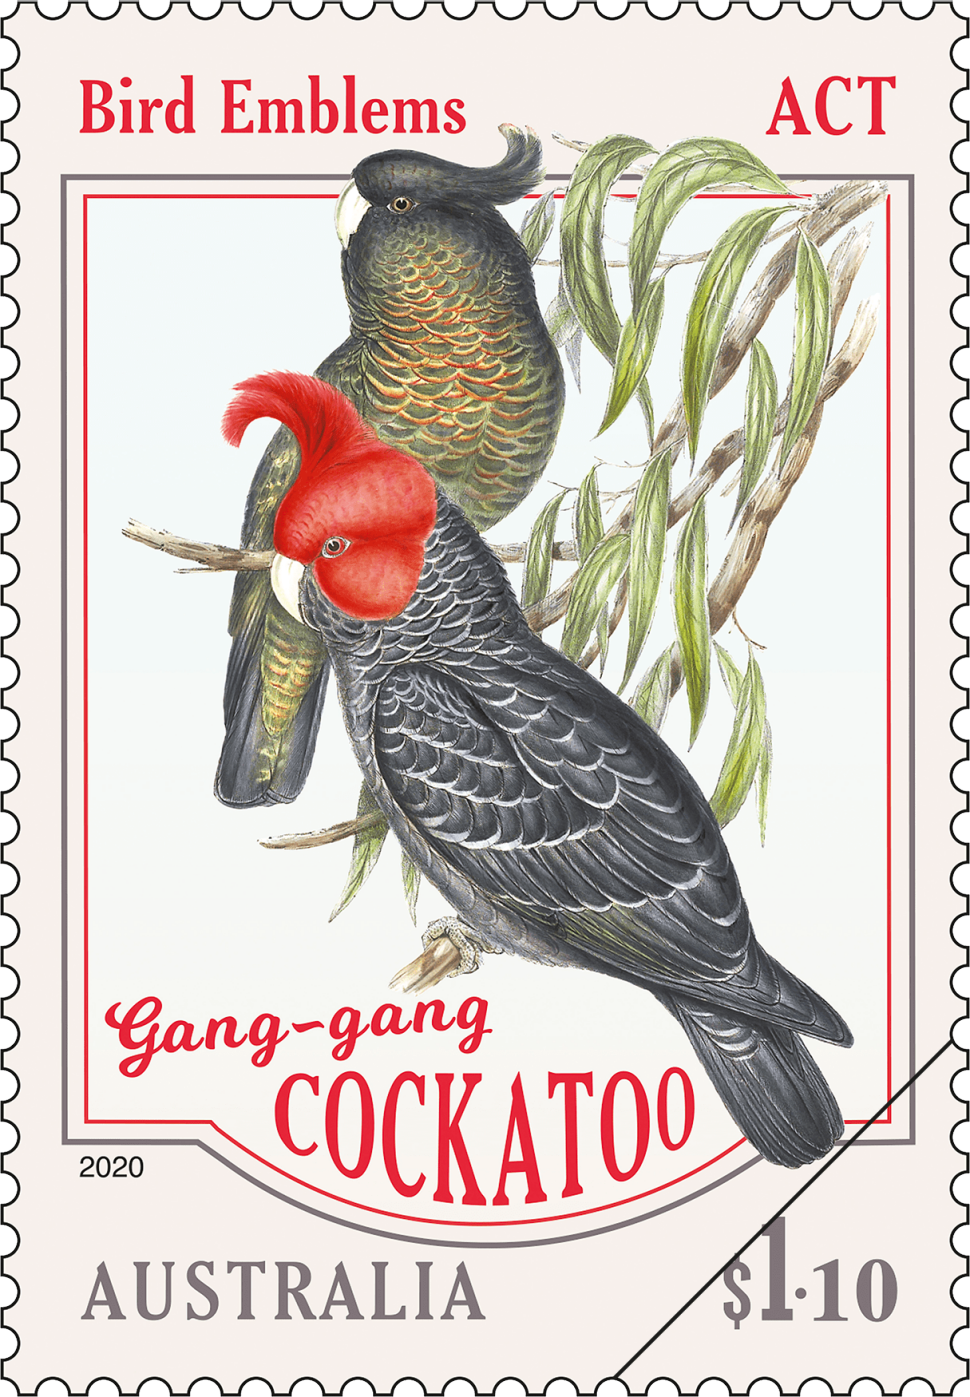 $1.10 - Gang-gang Cockatoo